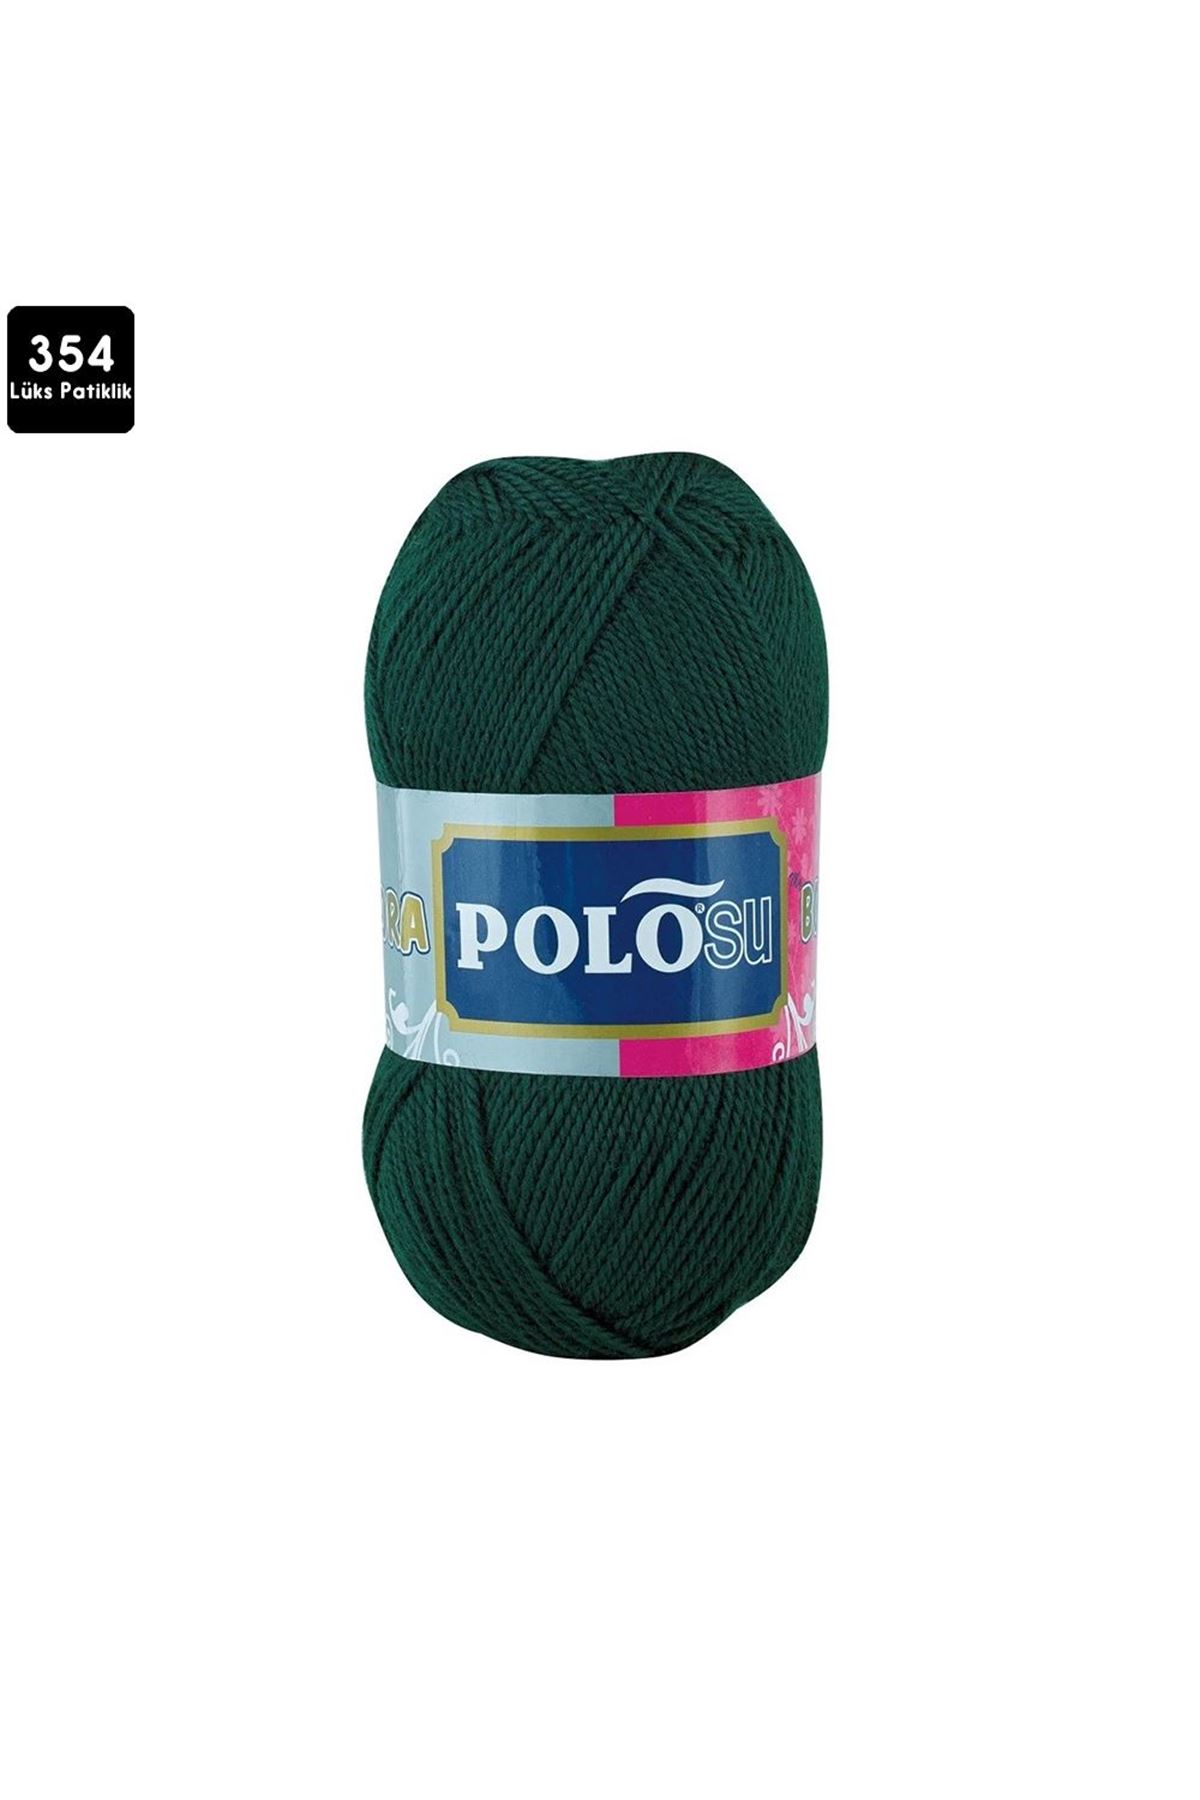 PoloSU Lüks Patiklik Renk No:354